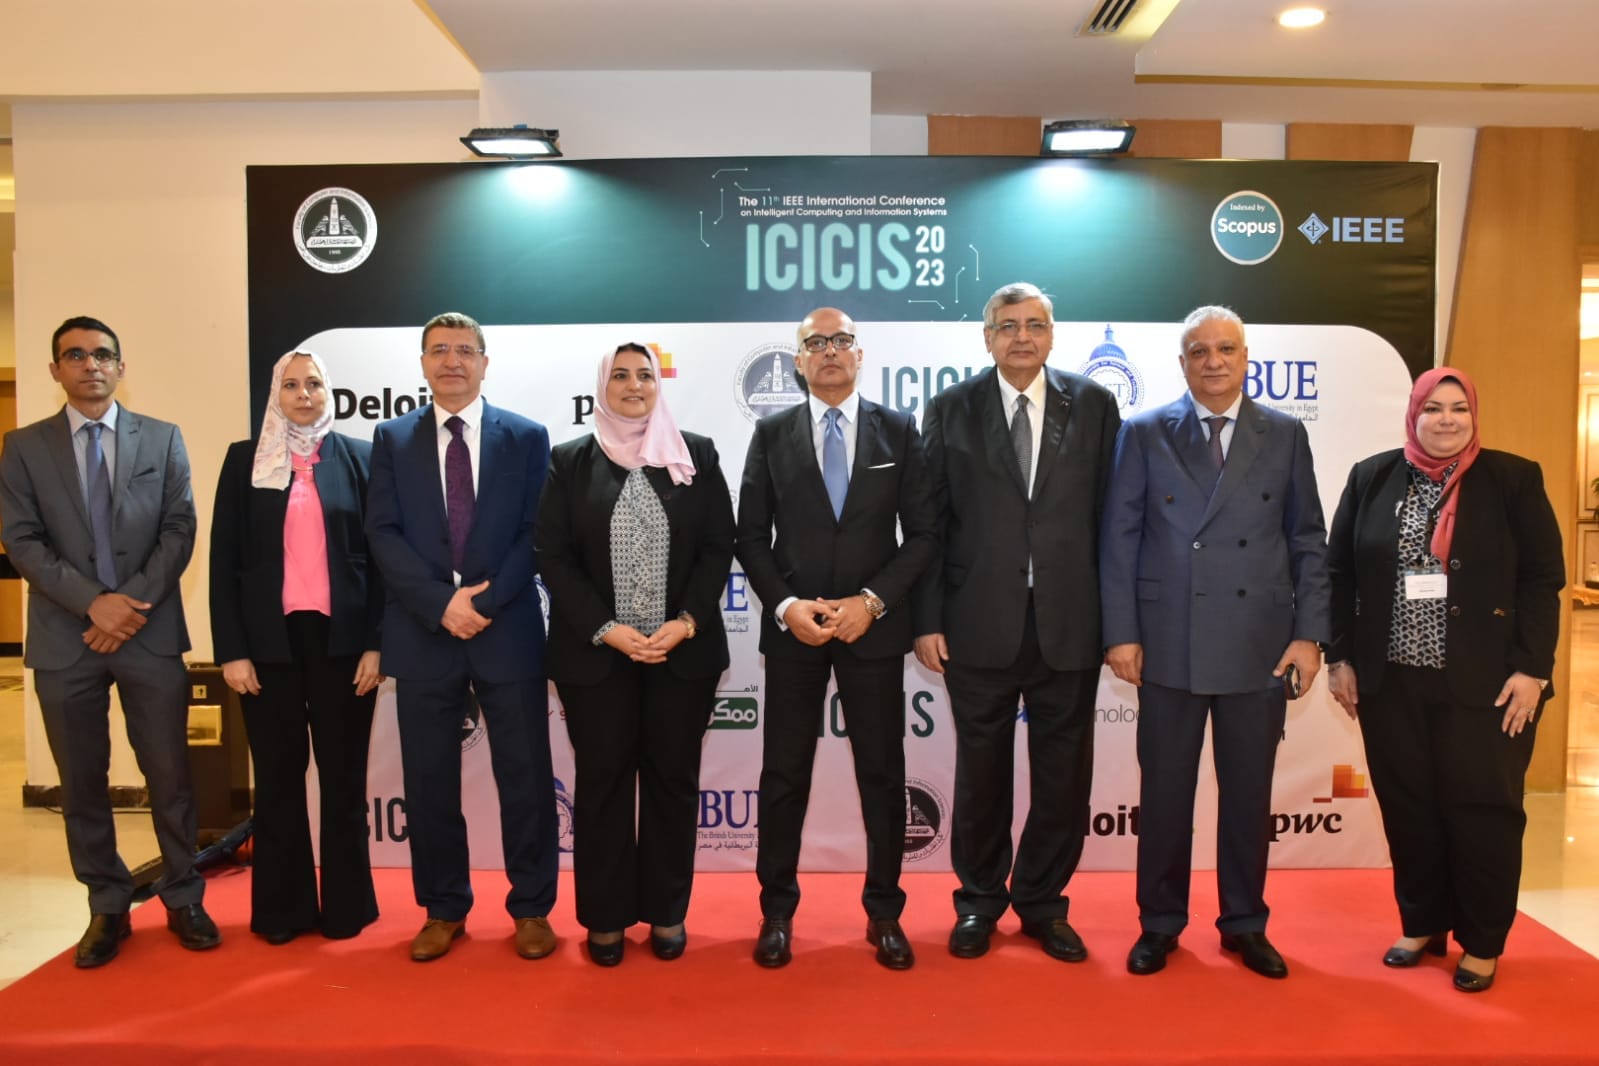 رئيس جامعة عين شمس يفتتح المؤتمر الدولي الحادي عشر لكلية الحاسبات والمعلومات